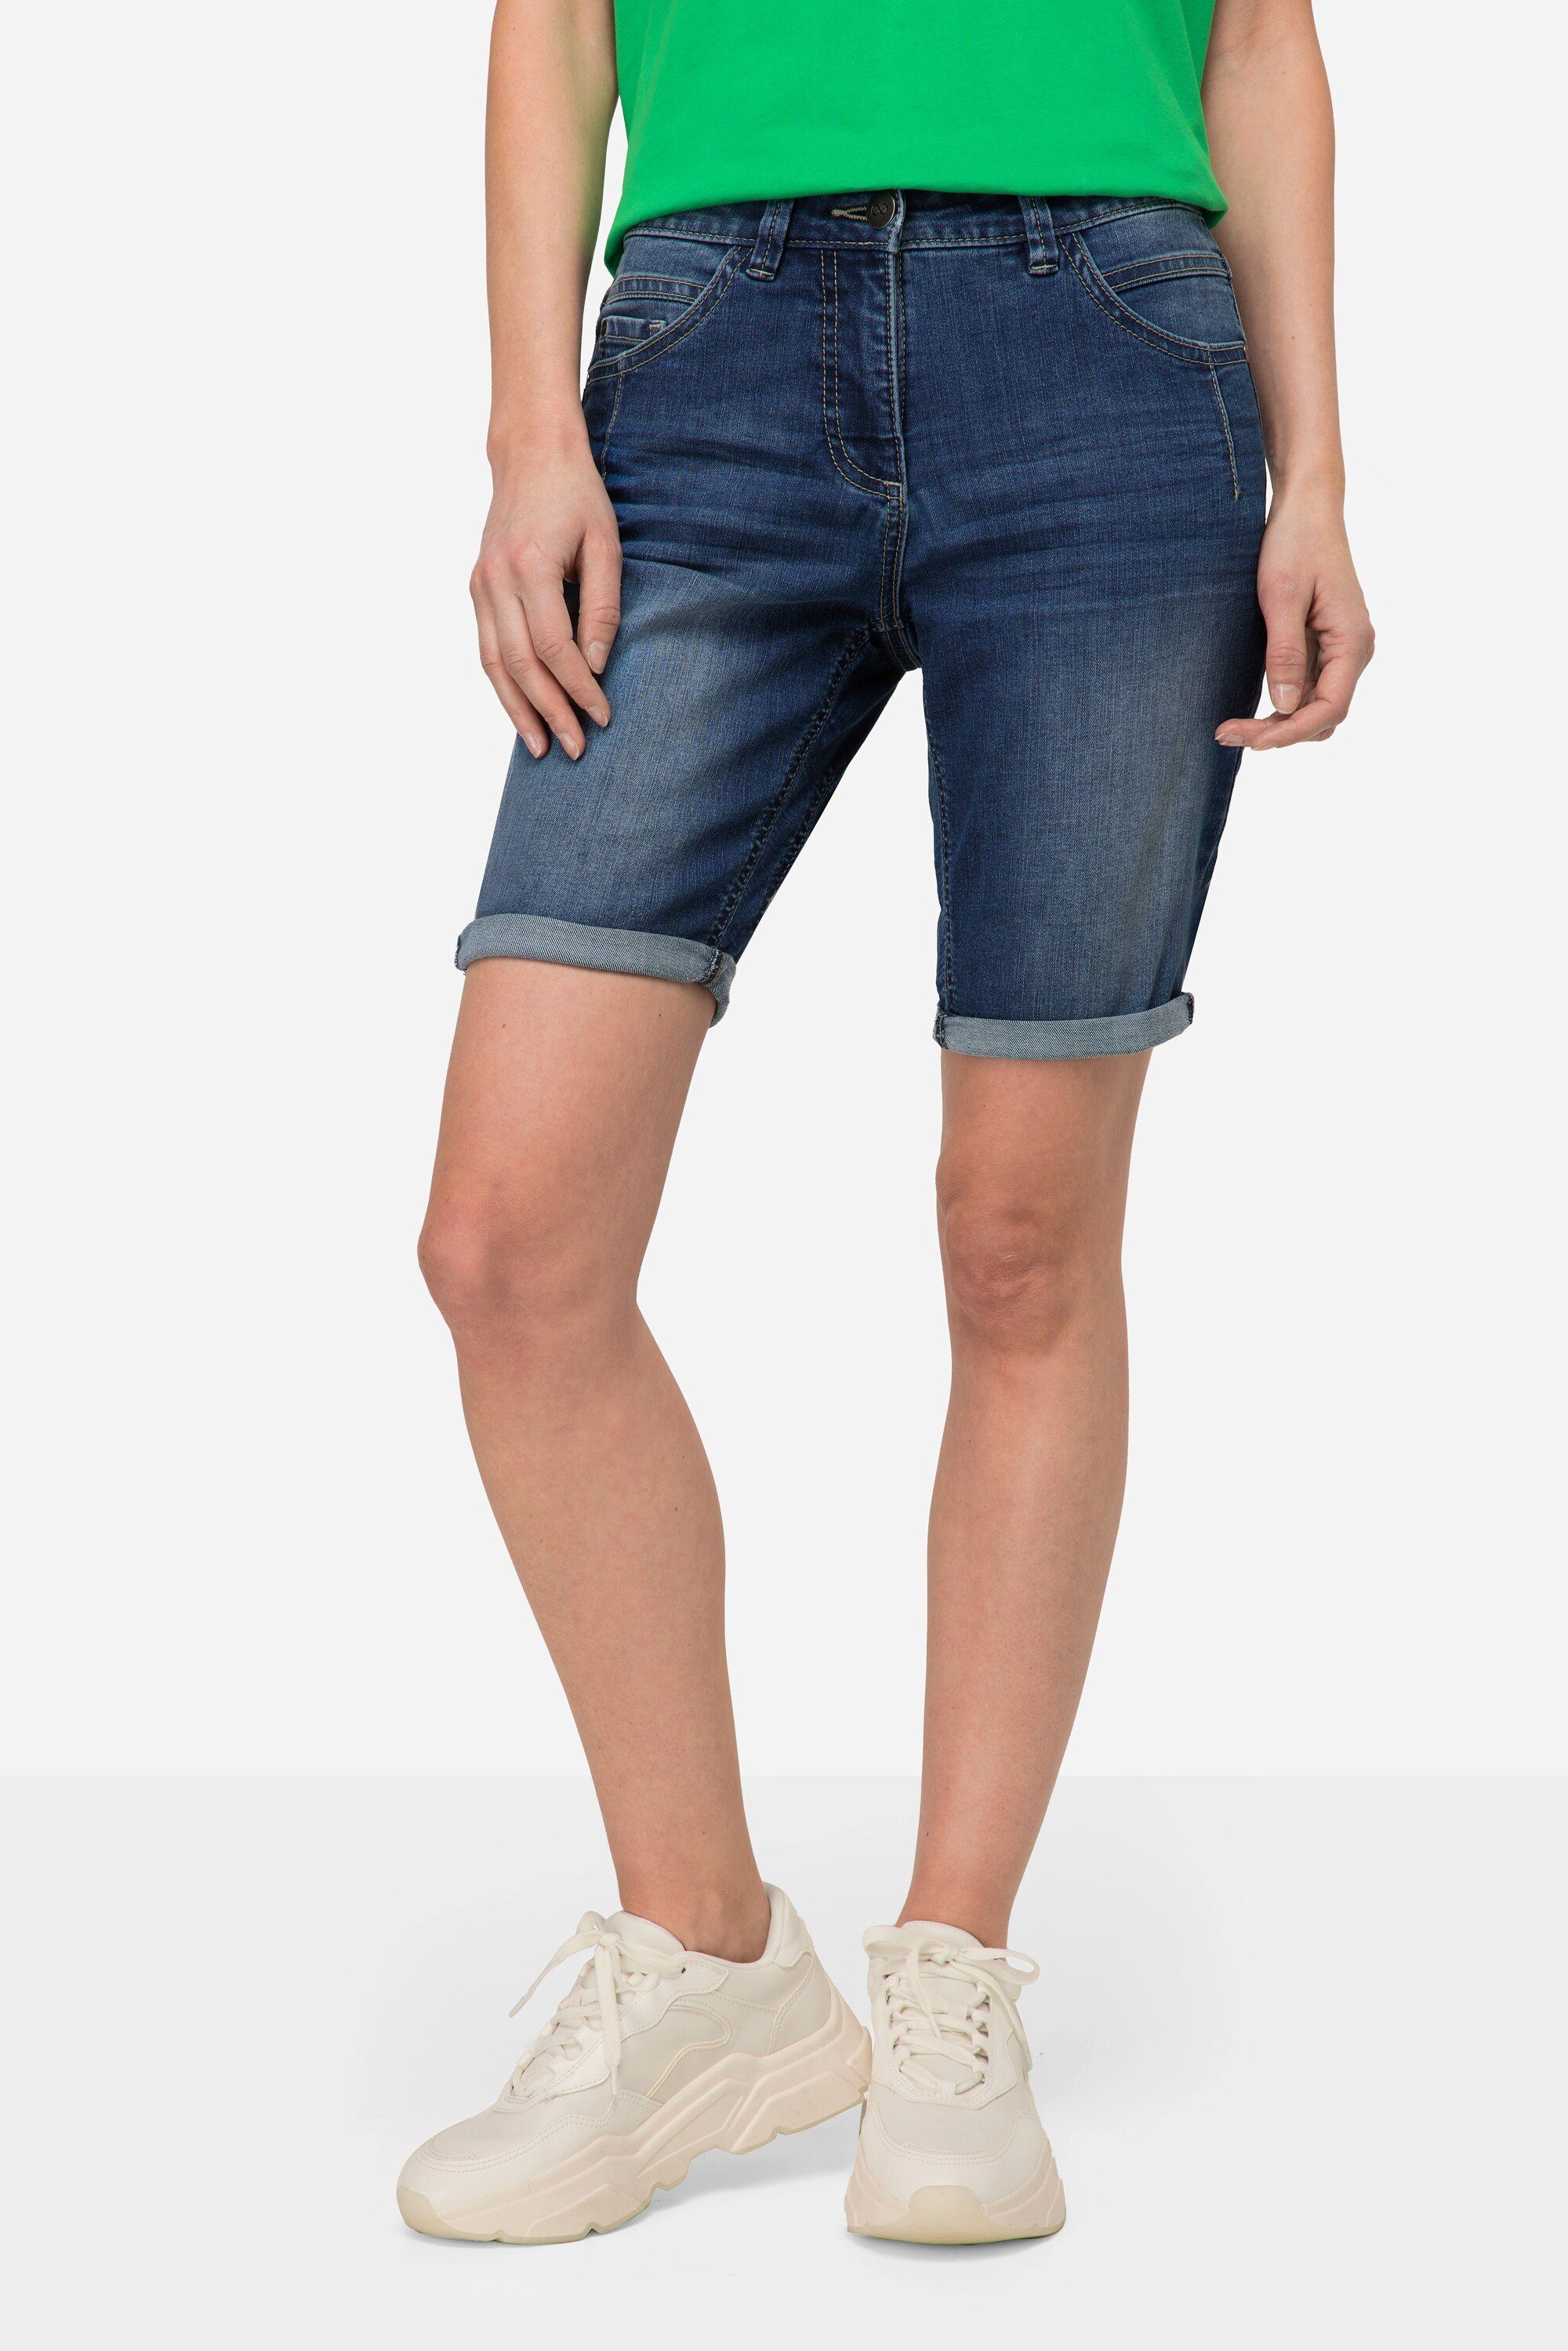 Laurasøn Regular-fit-Jeans Jeans-Shorts 5-Pocket Elastikbund blue denim